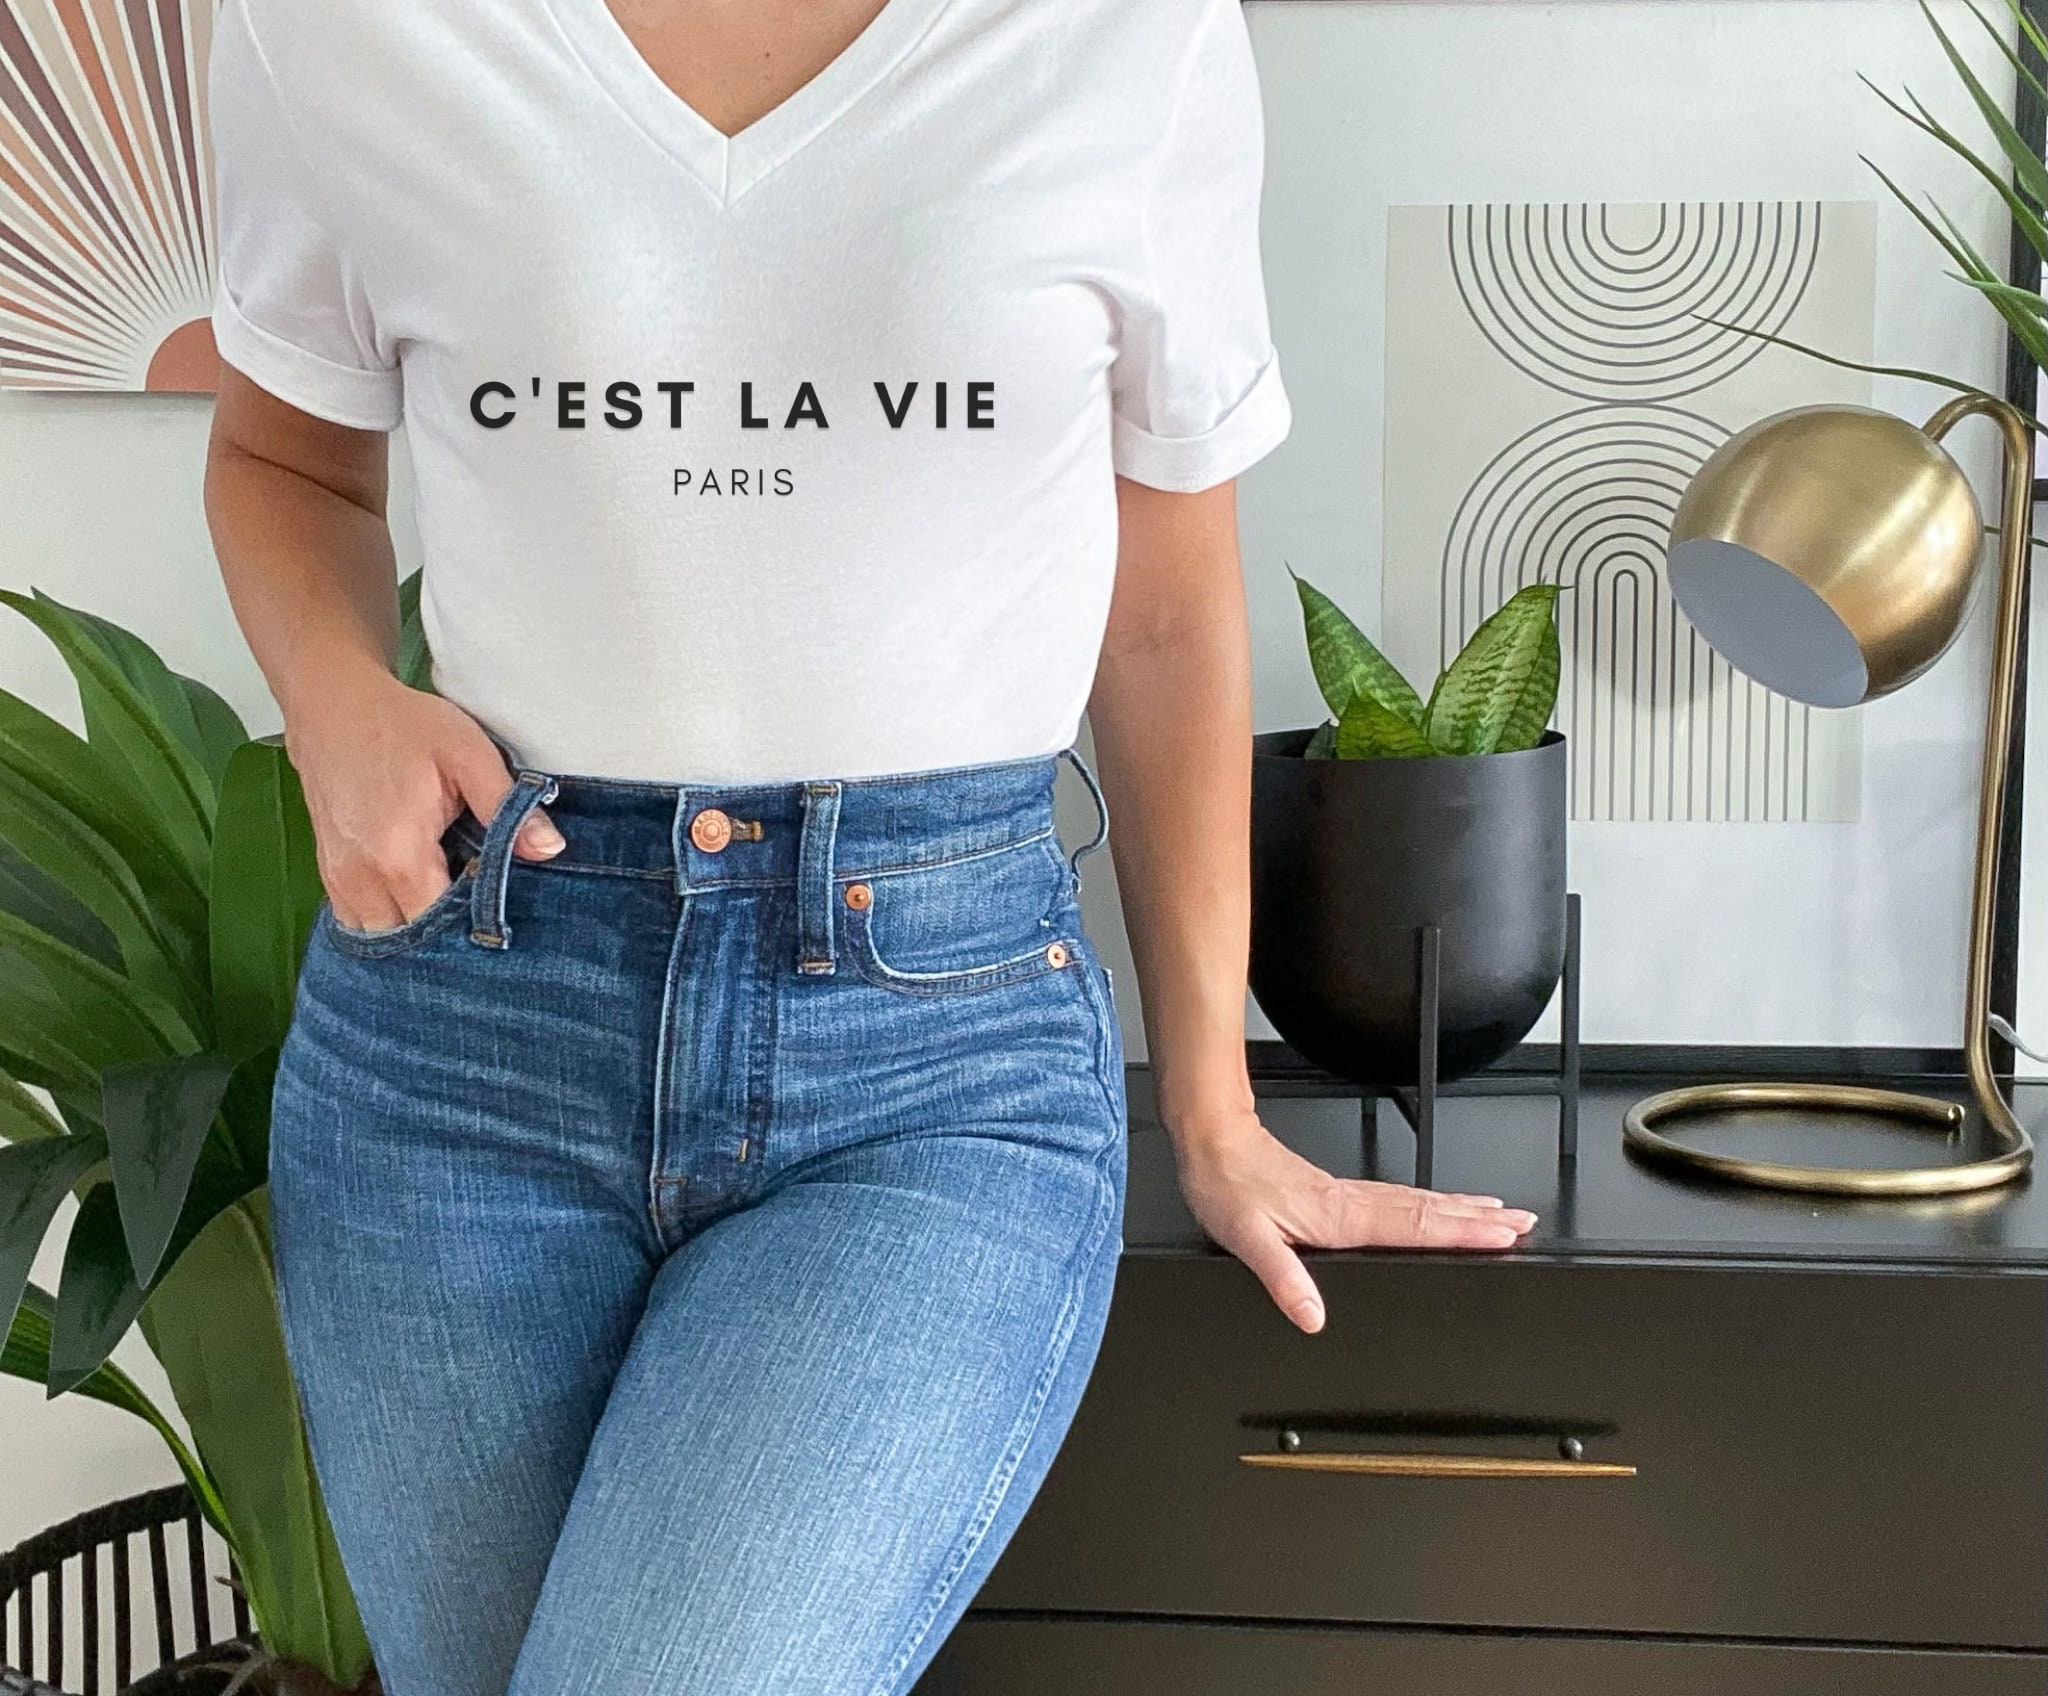 Slay La Vie (C'est la Vie) Essential T-Shirt for Sale by brogressproject